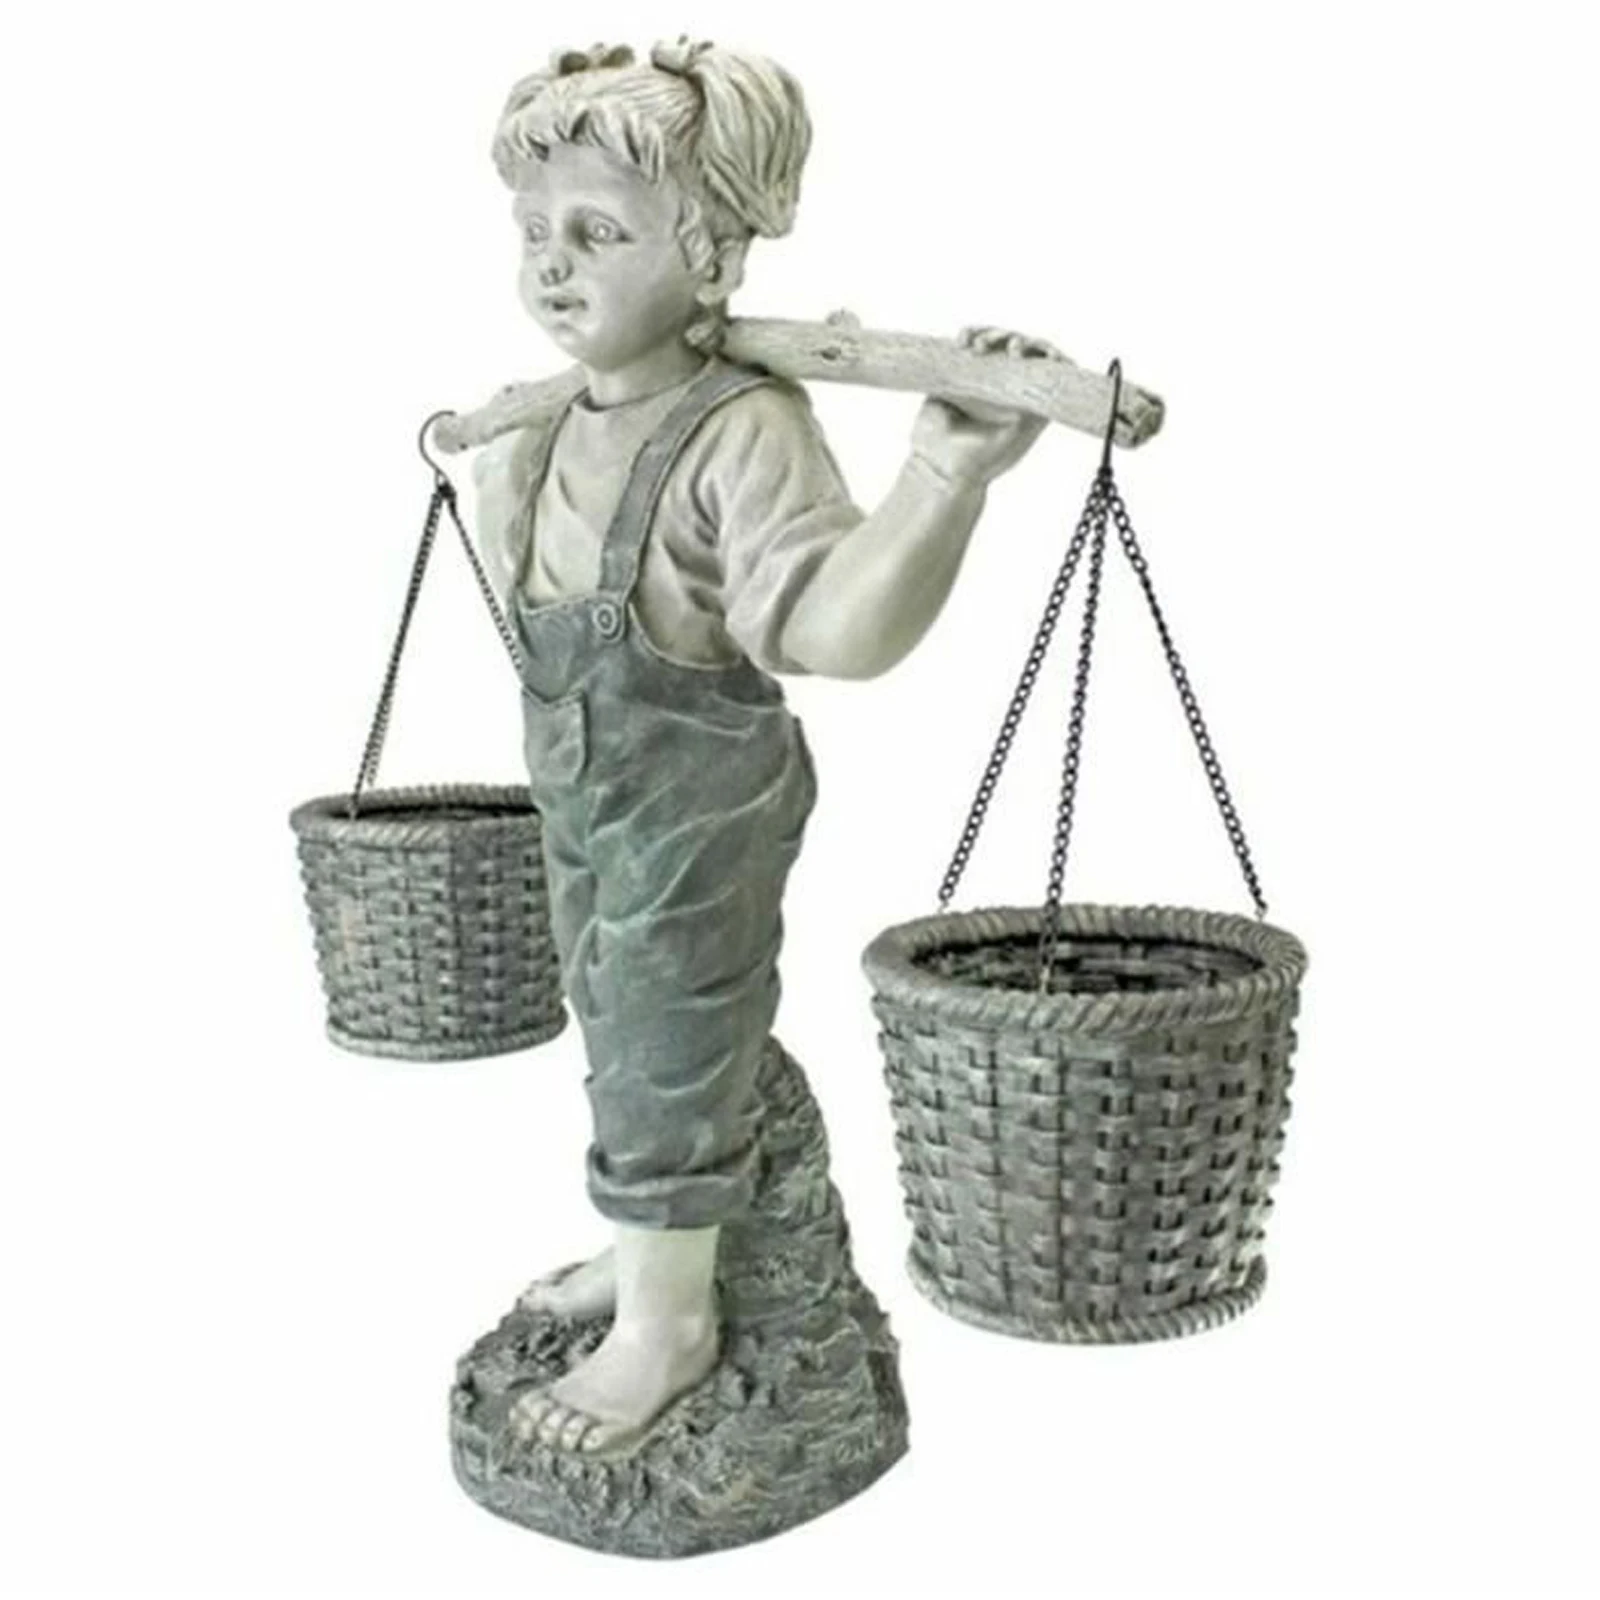 

Garden Decorative Statue Resin Little Girl Carrying Flower Baskets Sculpture for Yard Balcony Courtyard Garden Supplies Decor